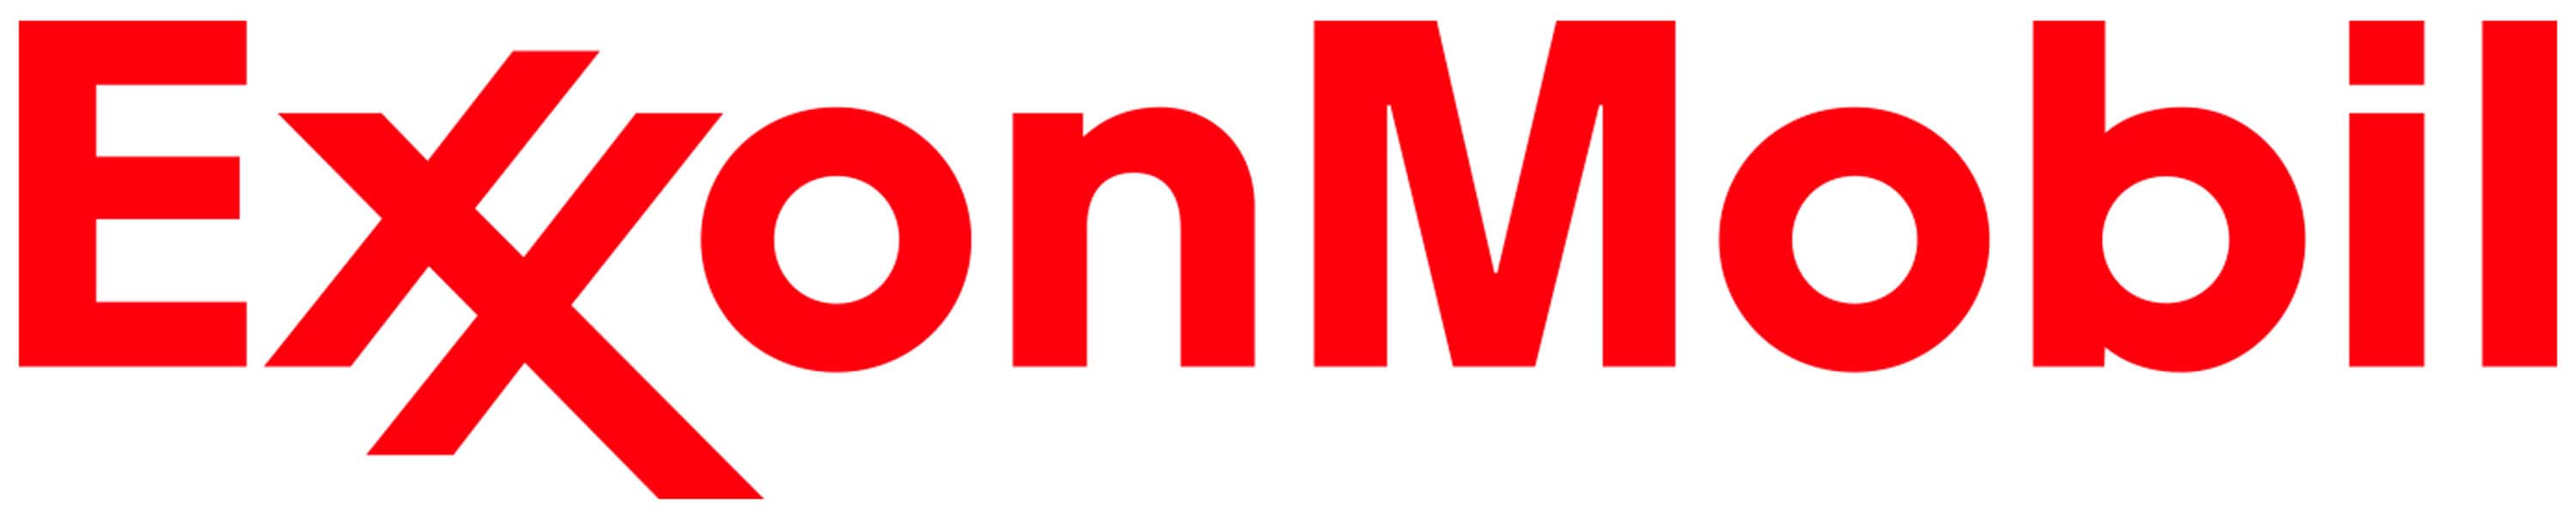 Logotipo de Exxon Mobil